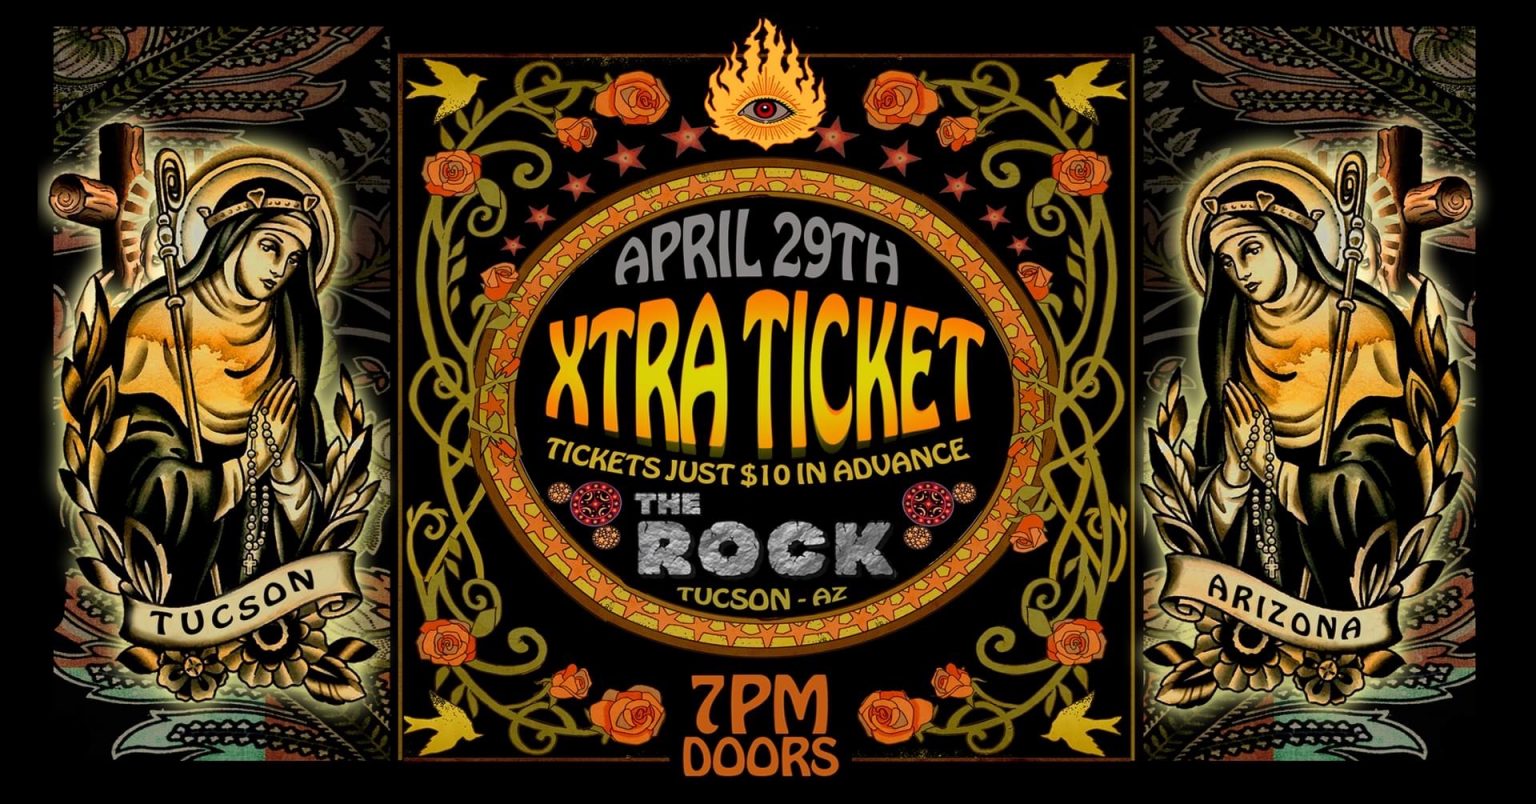 THE ROCK Tucson Concert Venue